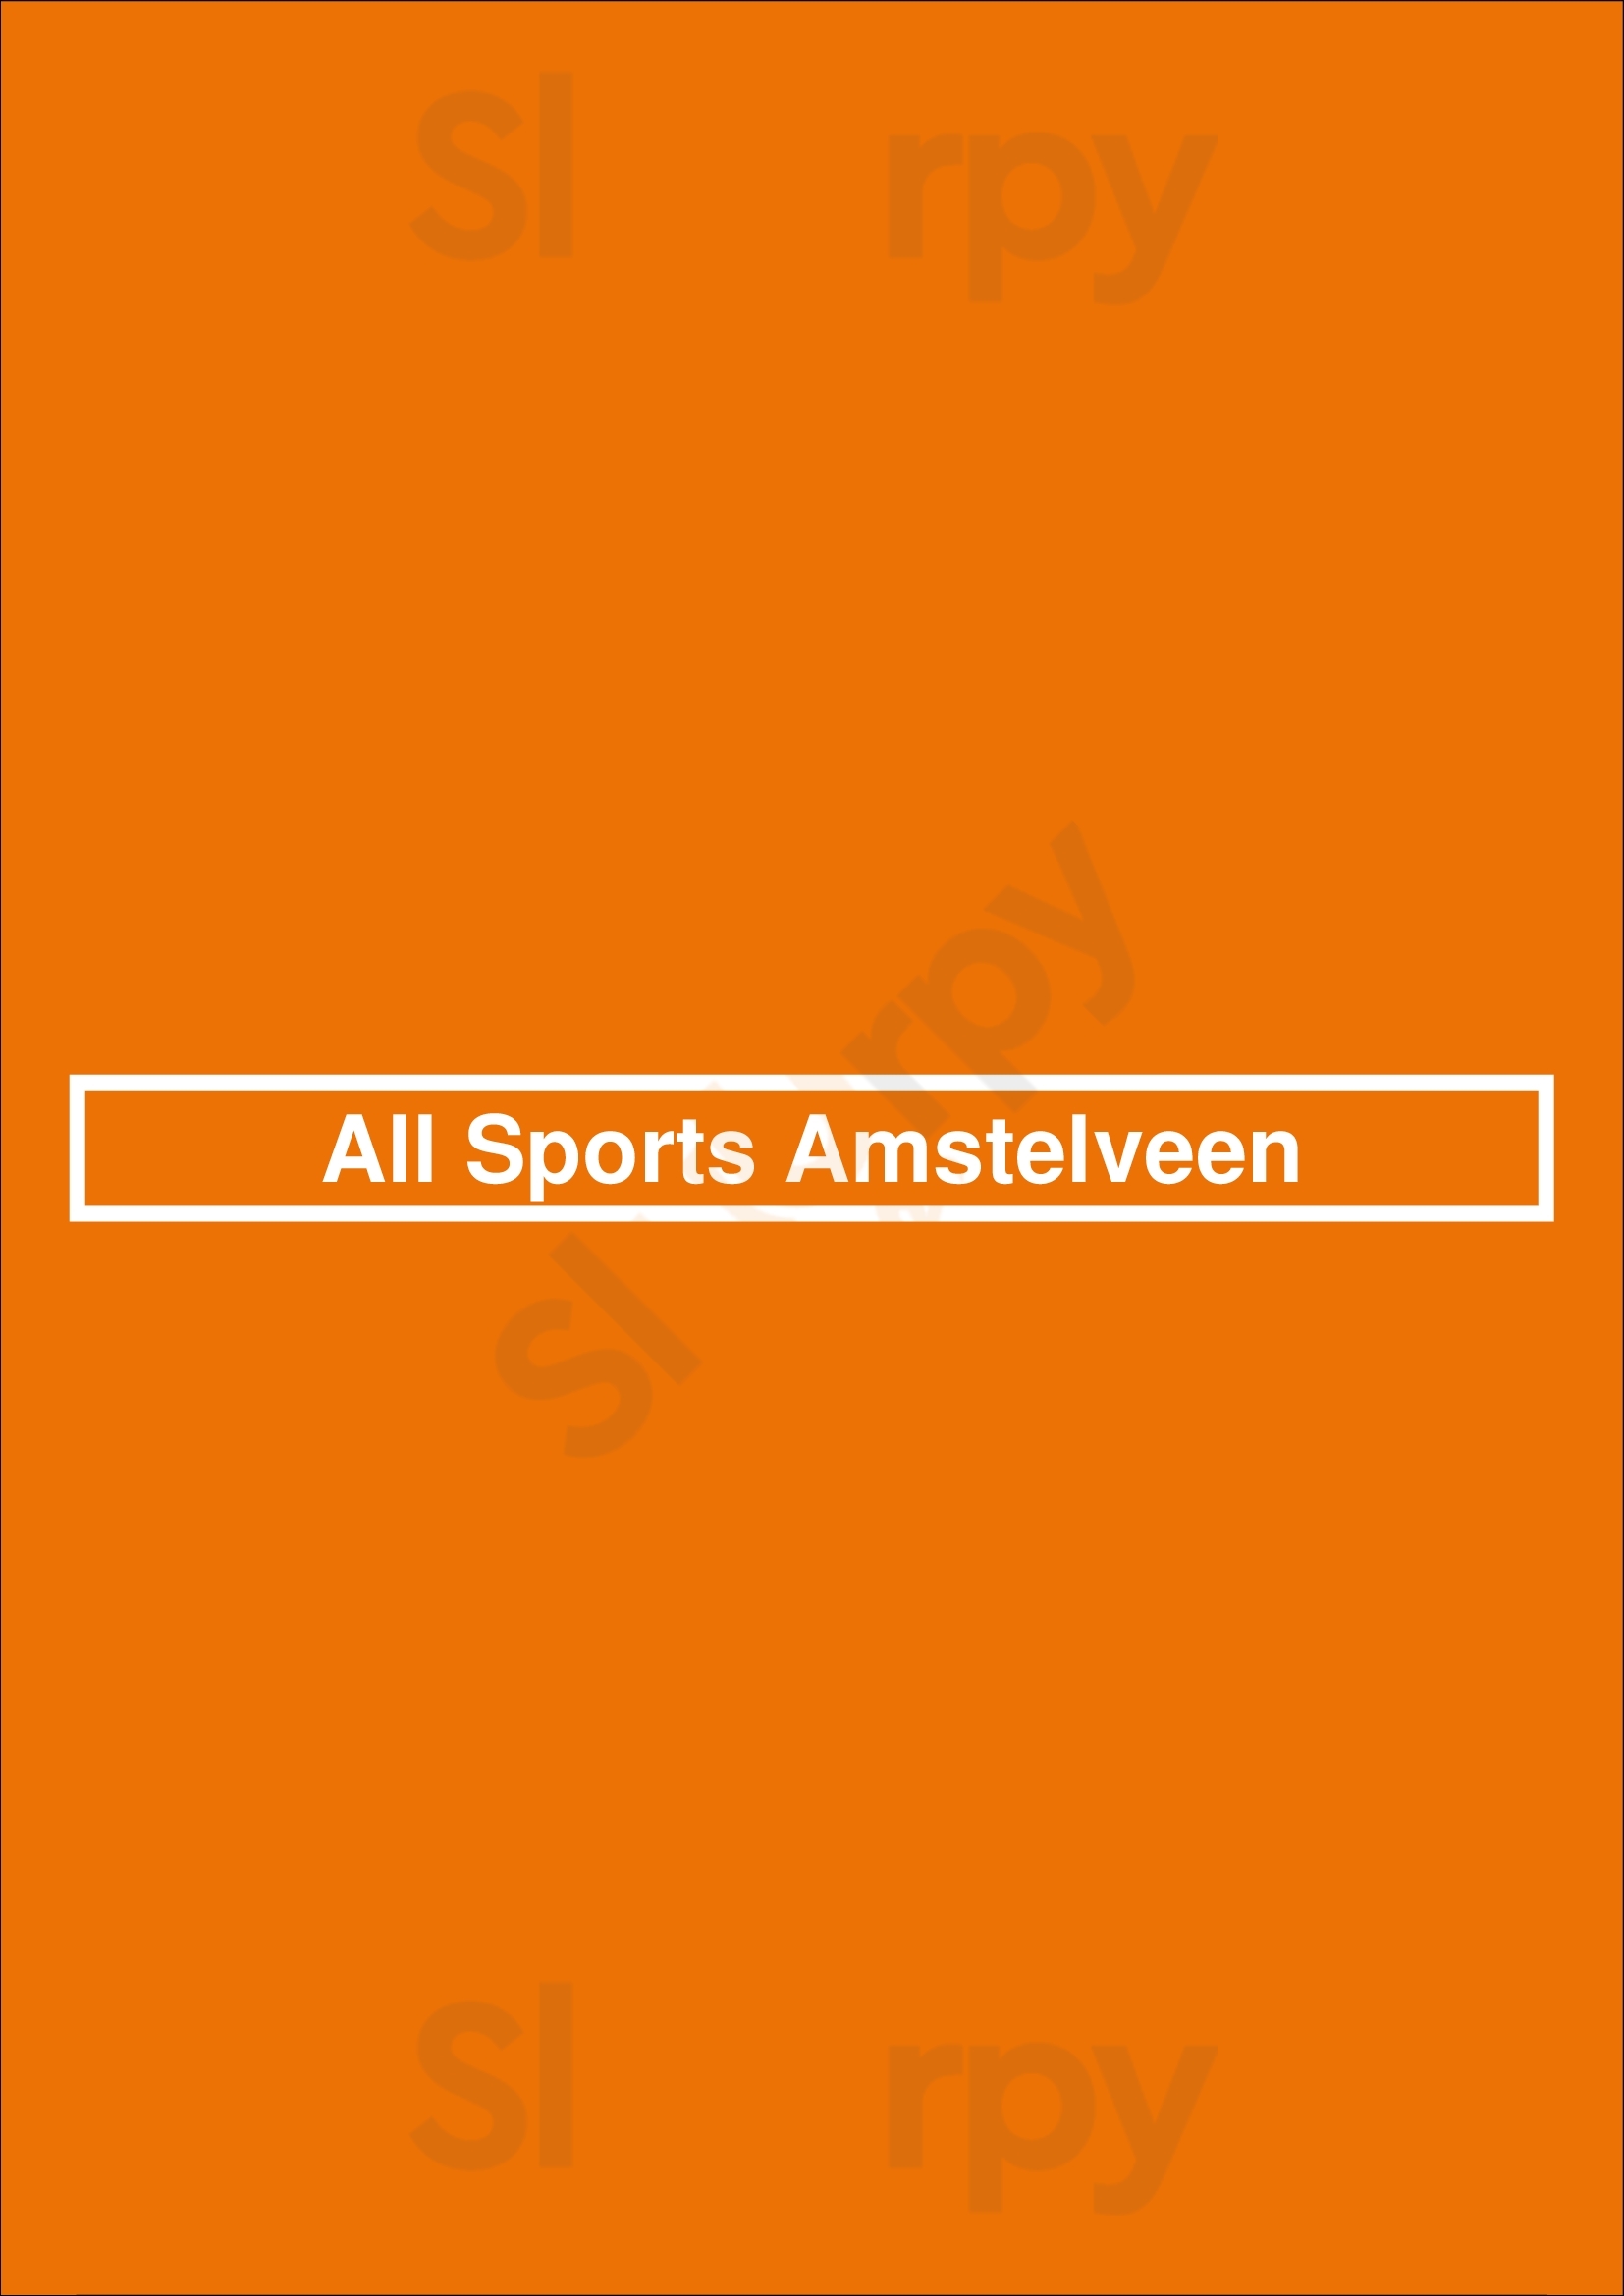 All Sports Amstelveen Amstelveen Menu - 1